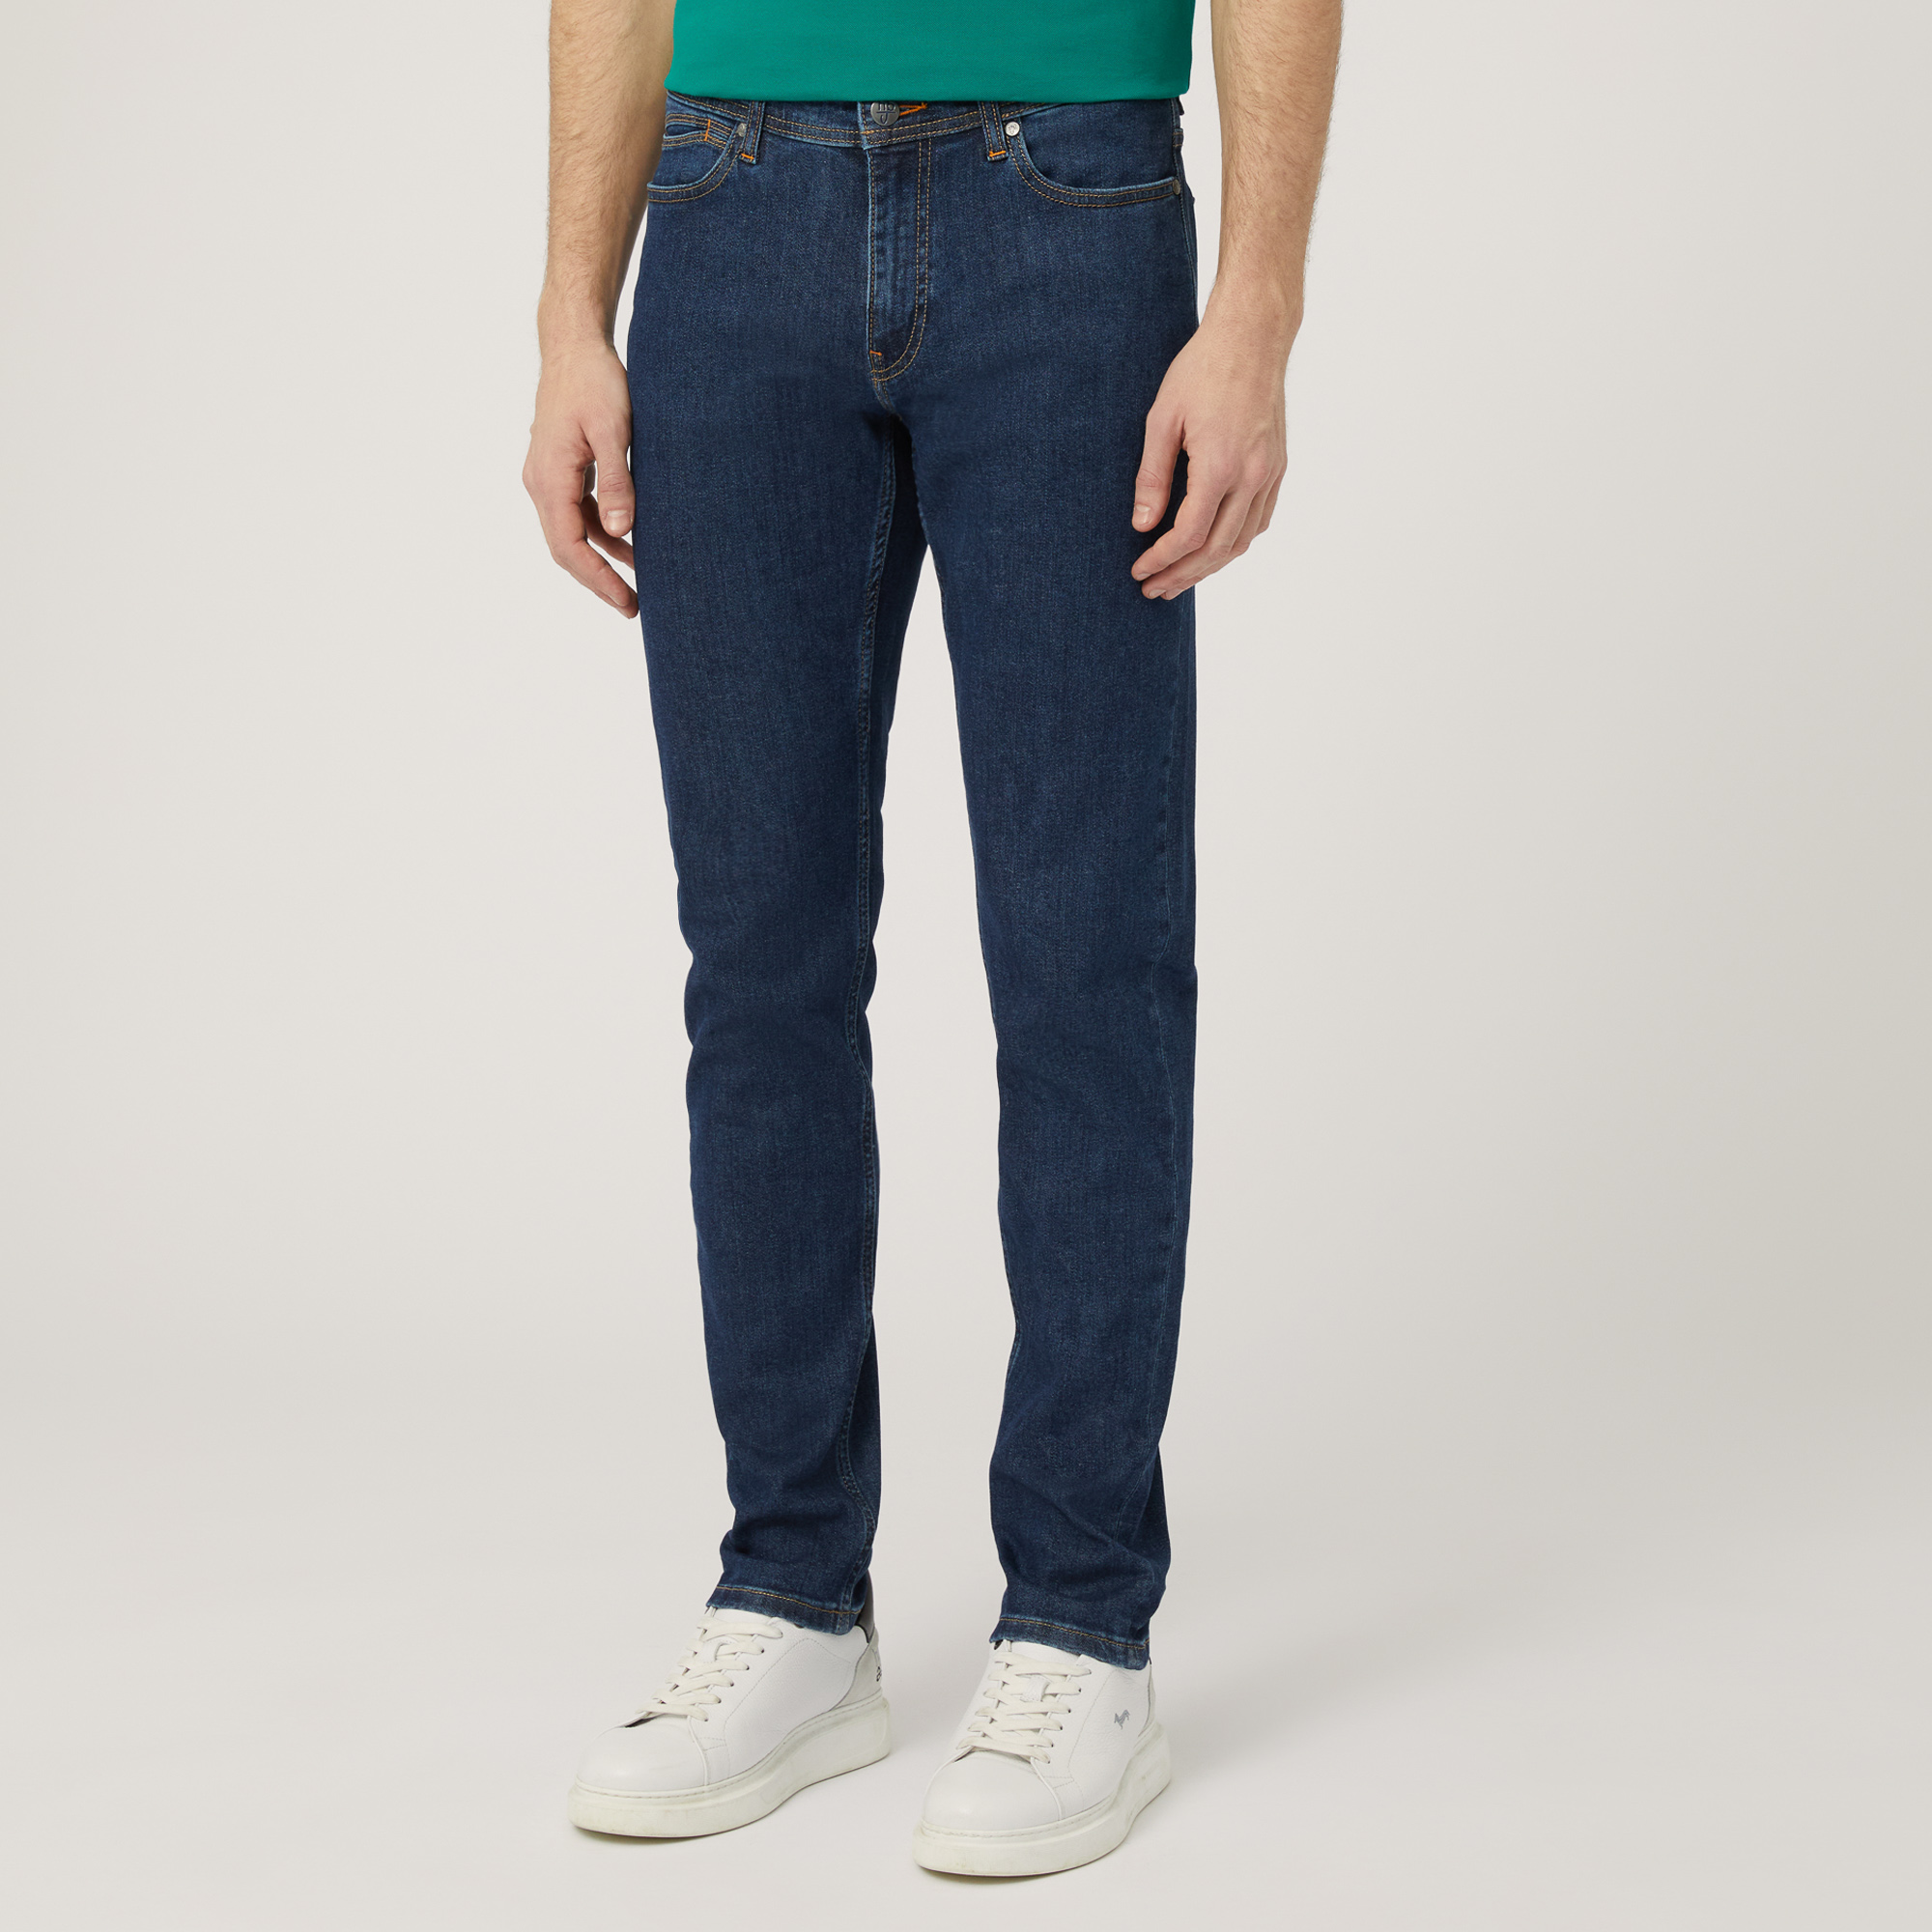 Pantaloni In Denim Narrow Fit, Blu Denim, large image number 0